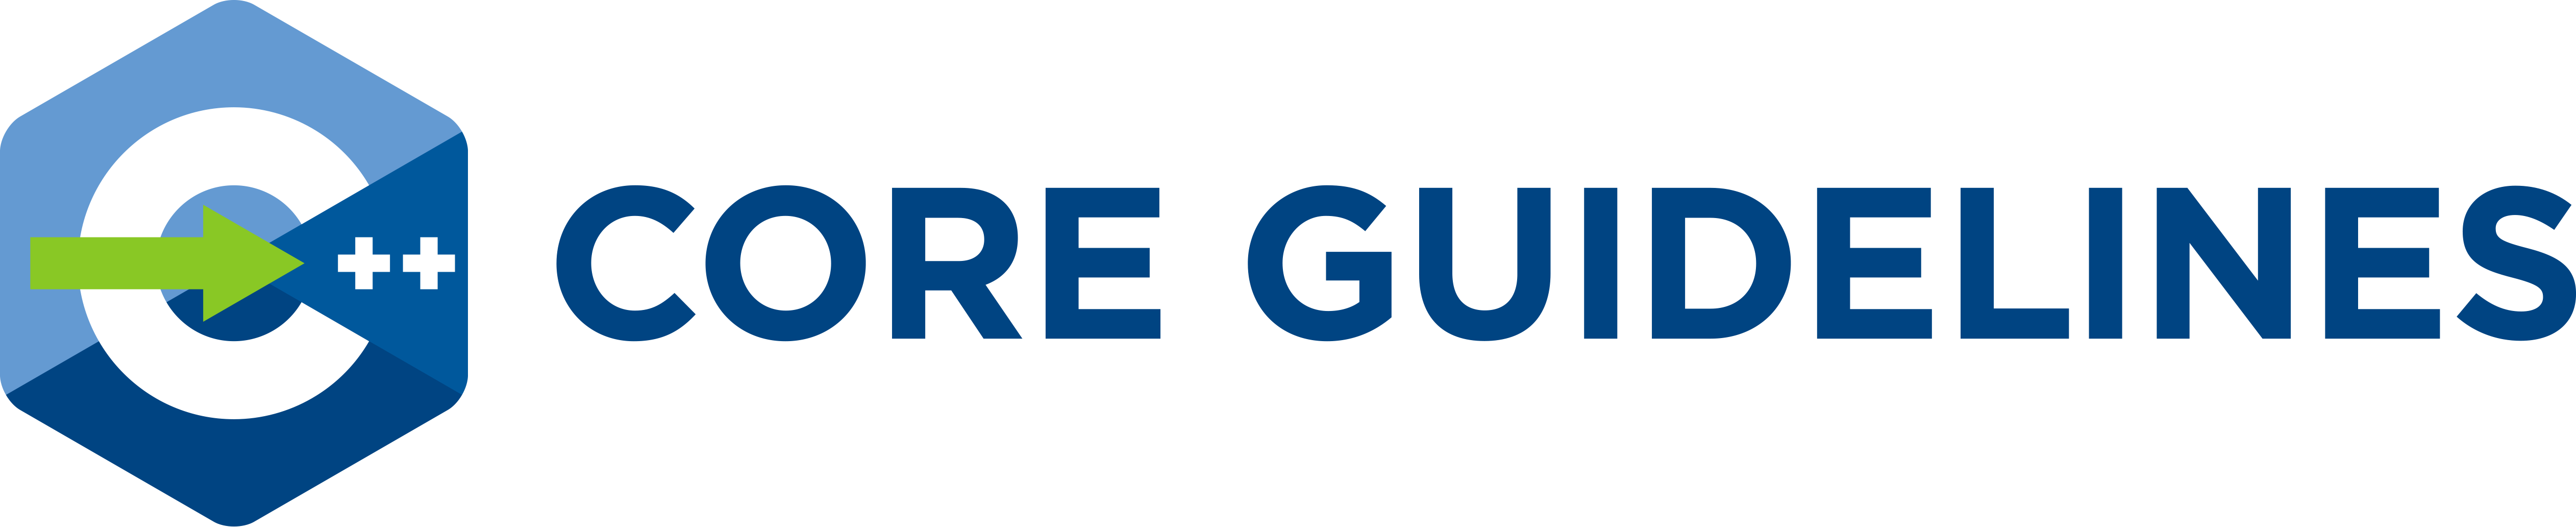 Guideline Logo